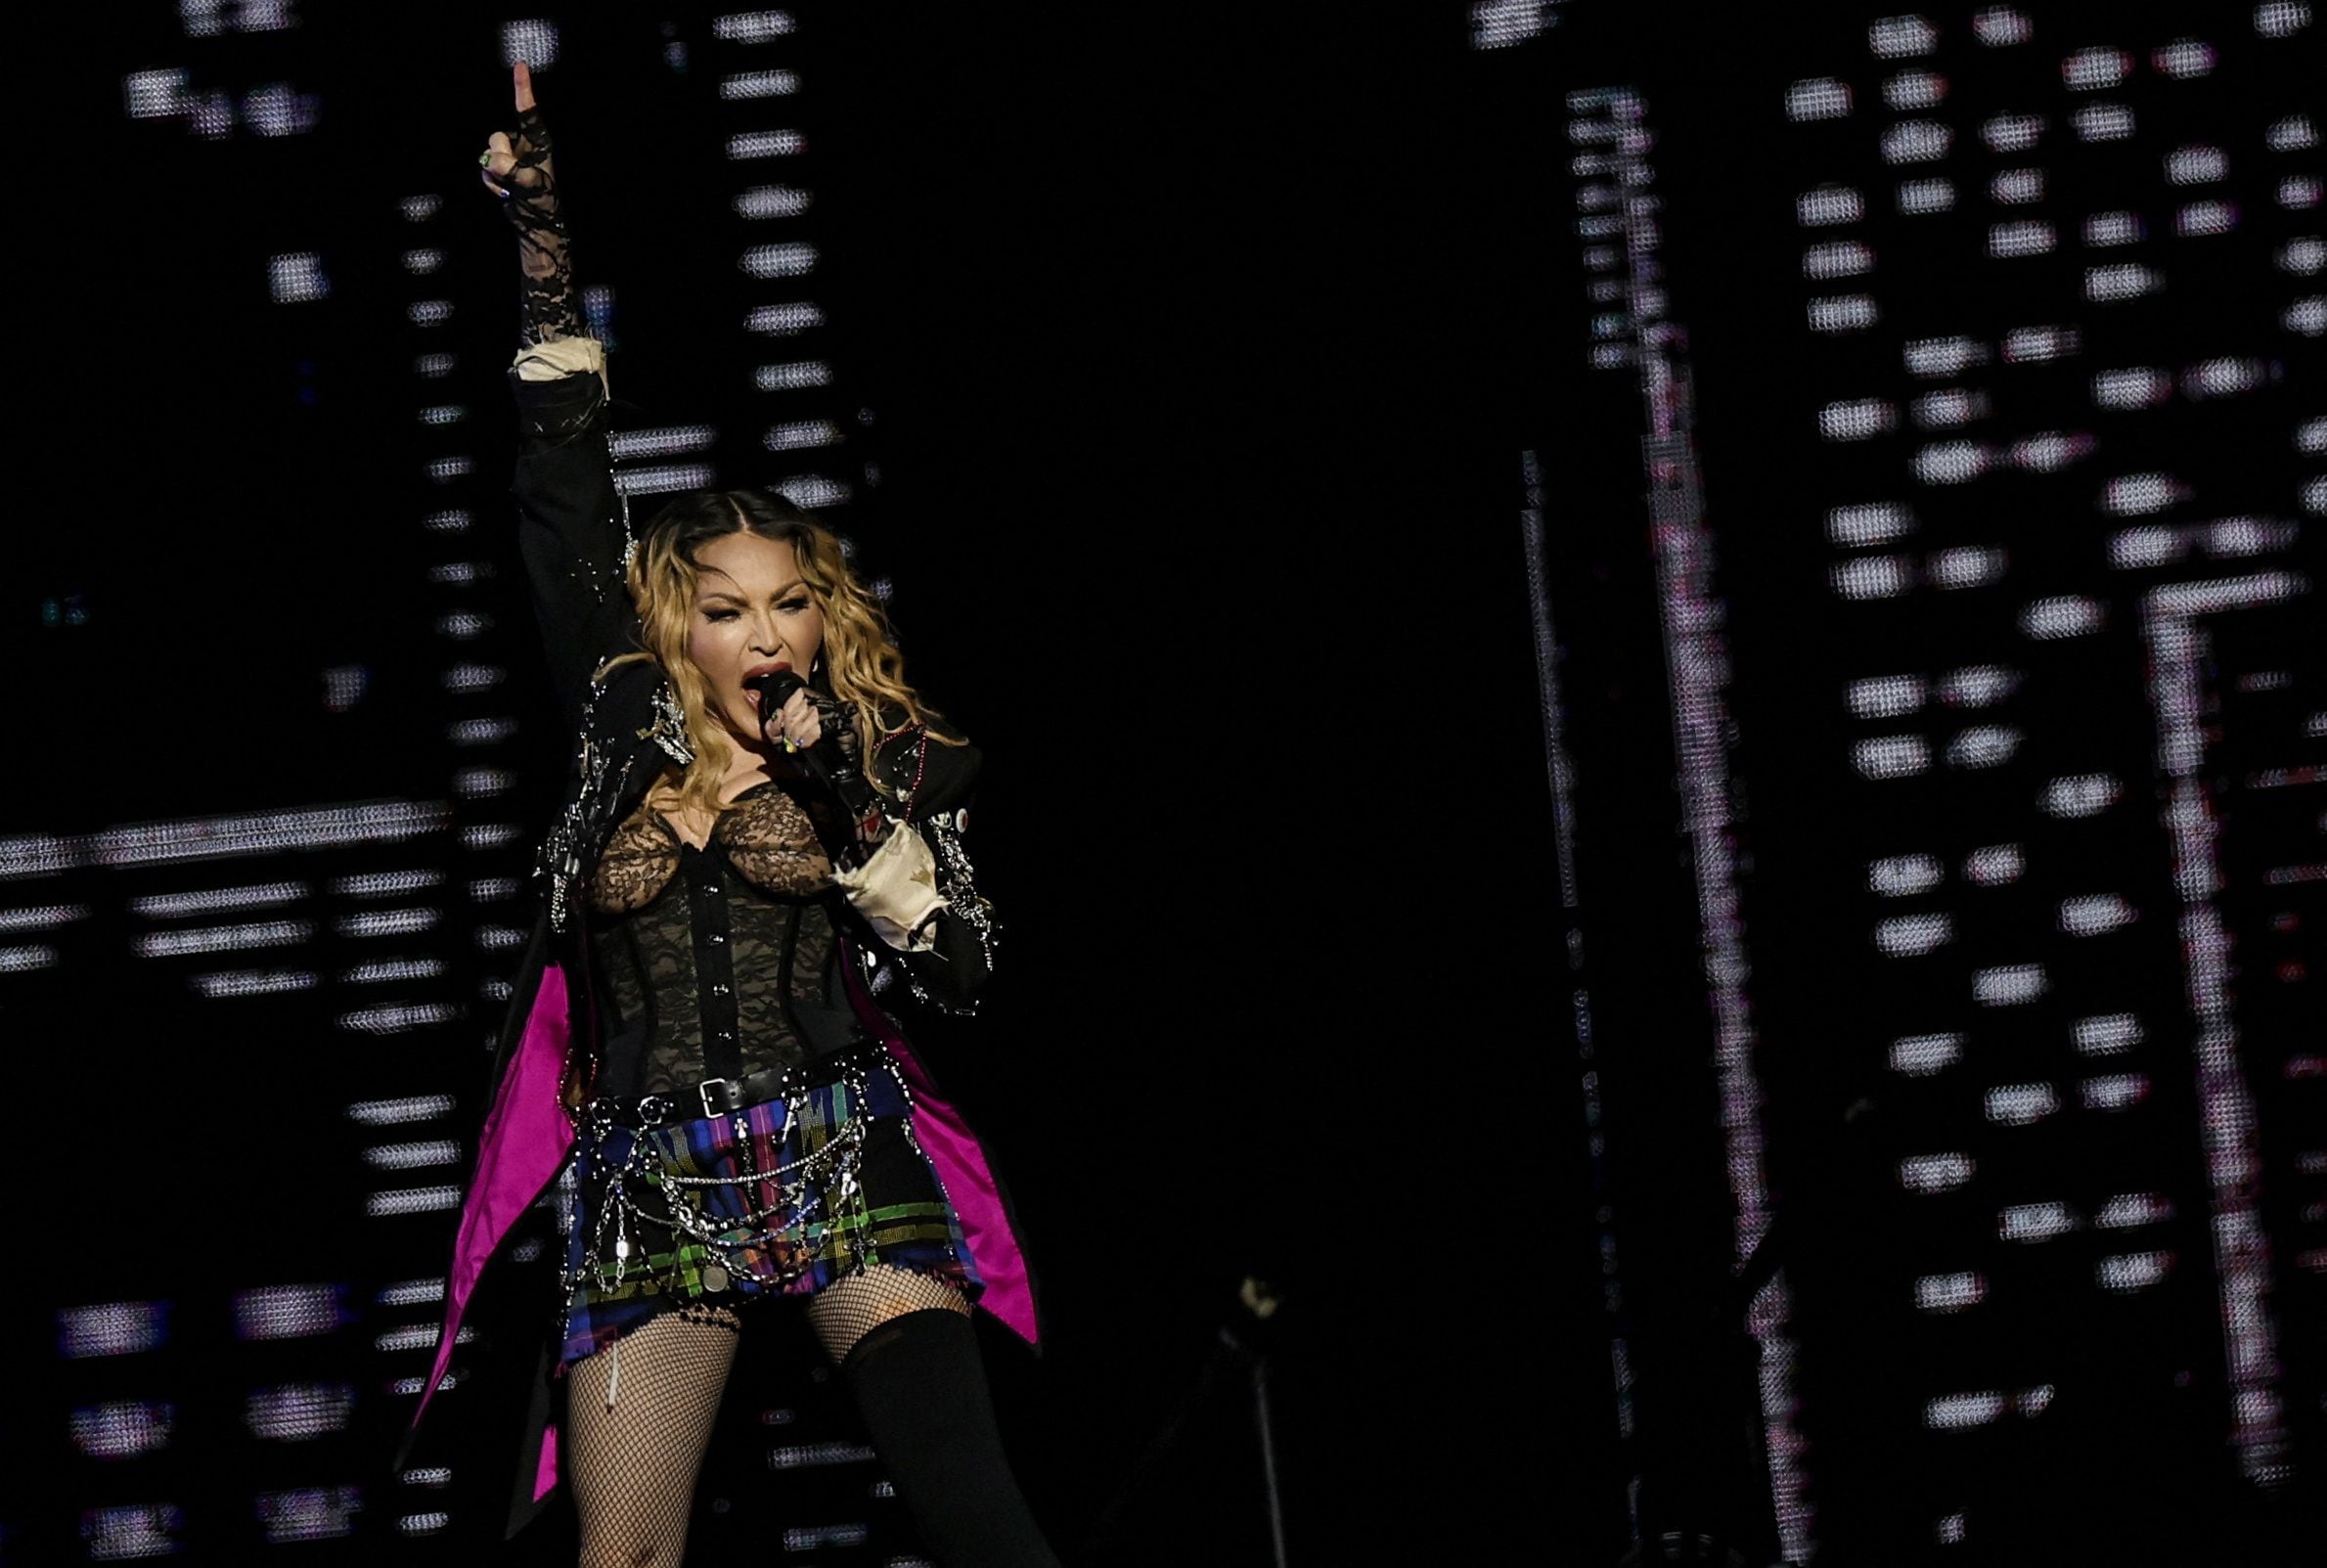 La lesión en la rodilla de Madonna le obligó a suspender conciertos en 2020 y hacer hasta seis horas de rehabilitación al día. (Créditos: REUTERS/Pilar Olivares)